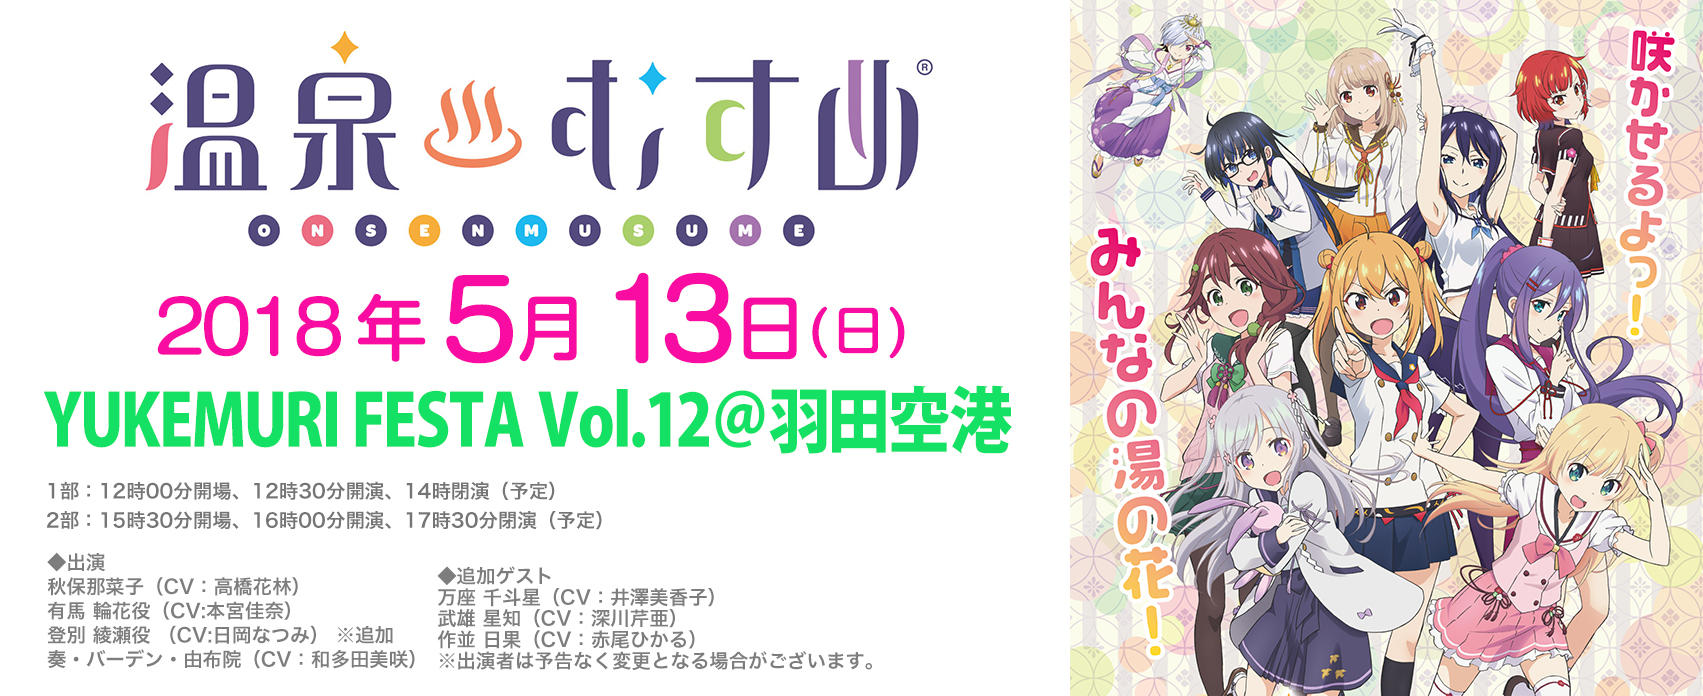 Yukemuri Festa Vol 12 羽田空港 東京のイベントスペース Tiat Sky Hall